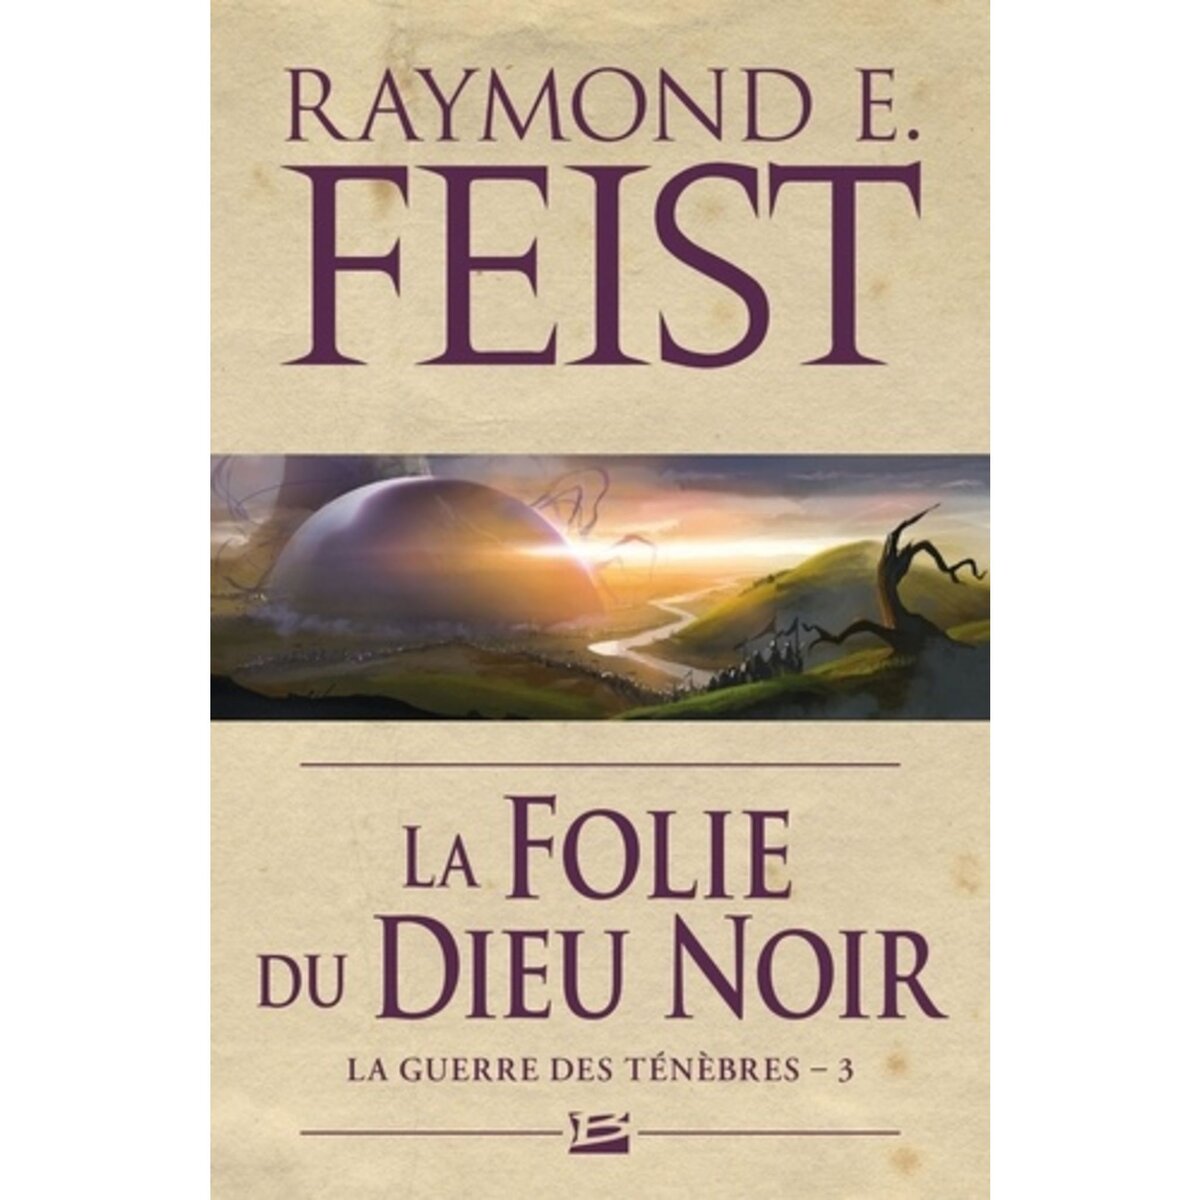  LA GUERRE DES TENEBRES TOME 3 : LA FOLIE DU DIEU NOIR, Feist Raymond-E